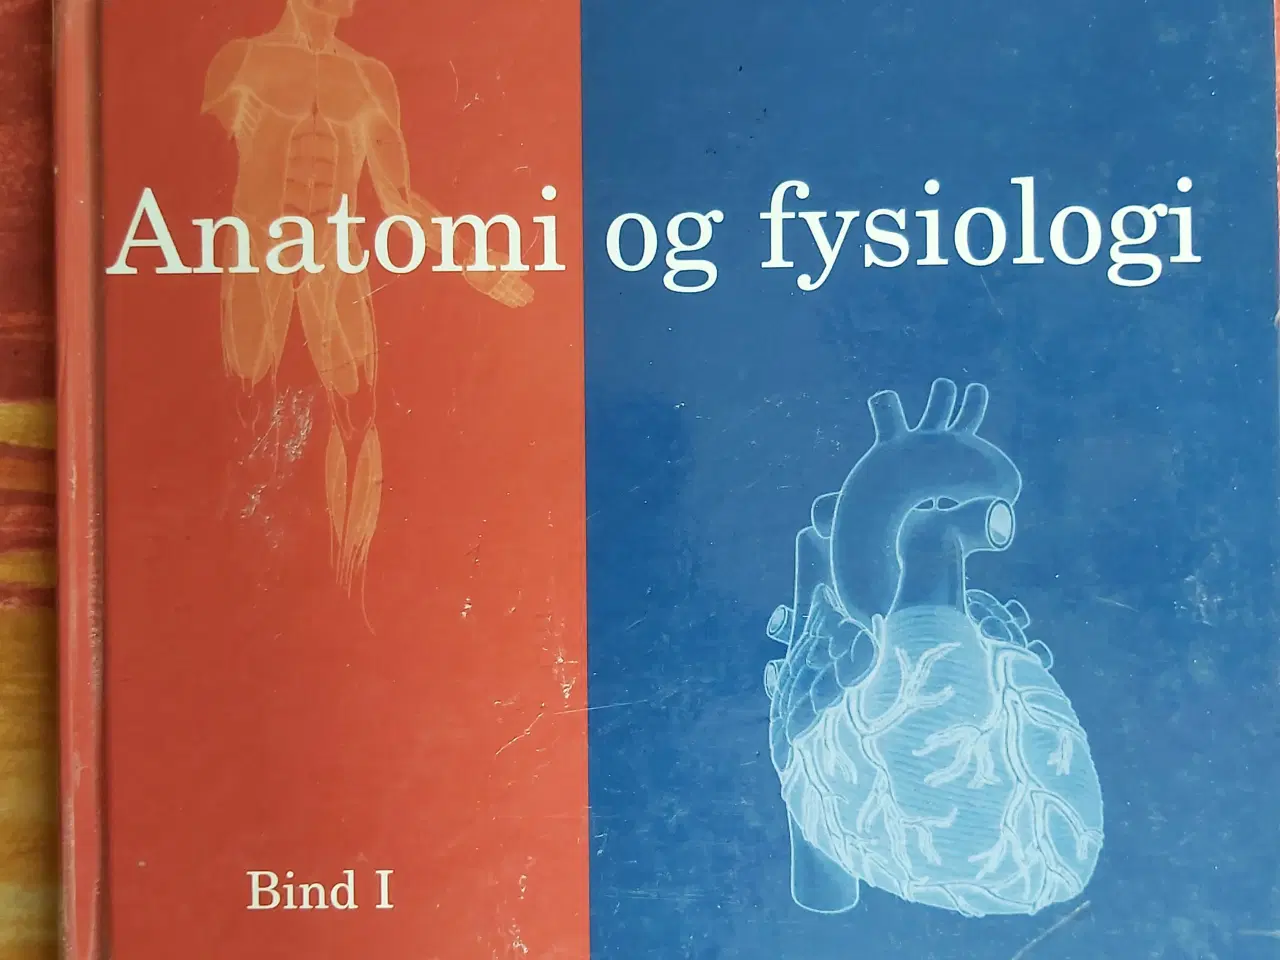 Billede 1 - Anatomi og fysiologi, bind 1